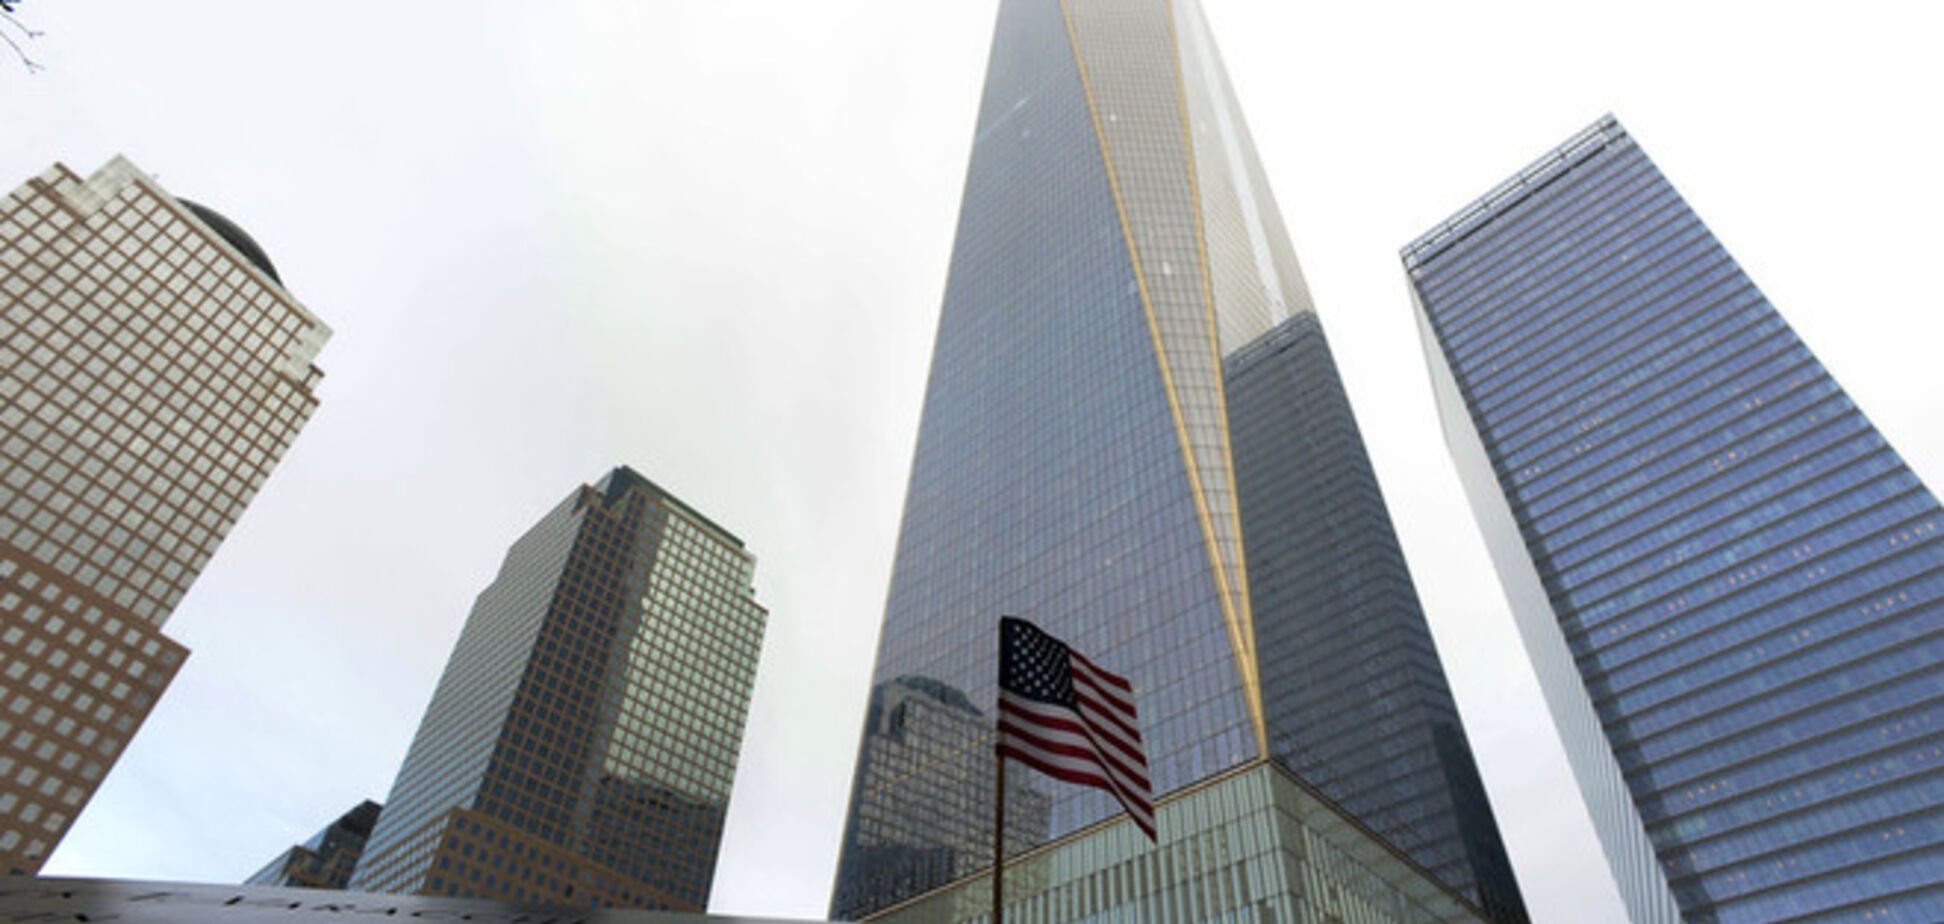 Всемирный торговый центр вновь открылся через 13 лет после теракта 11 сентября